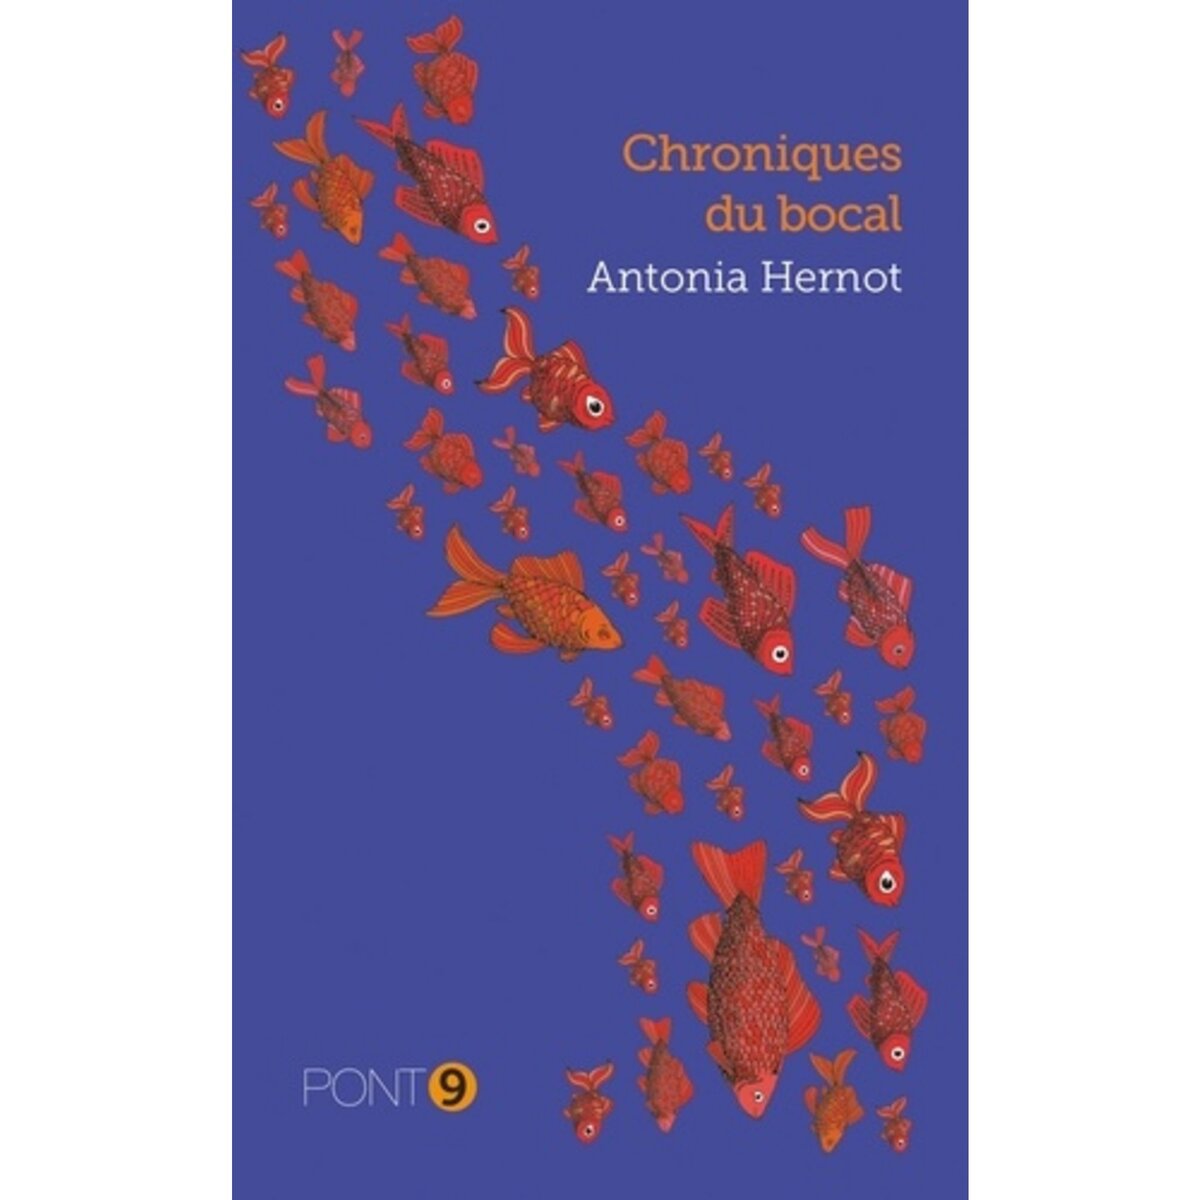  CHRONIQUES DU BOCAL, Hernot Antonia